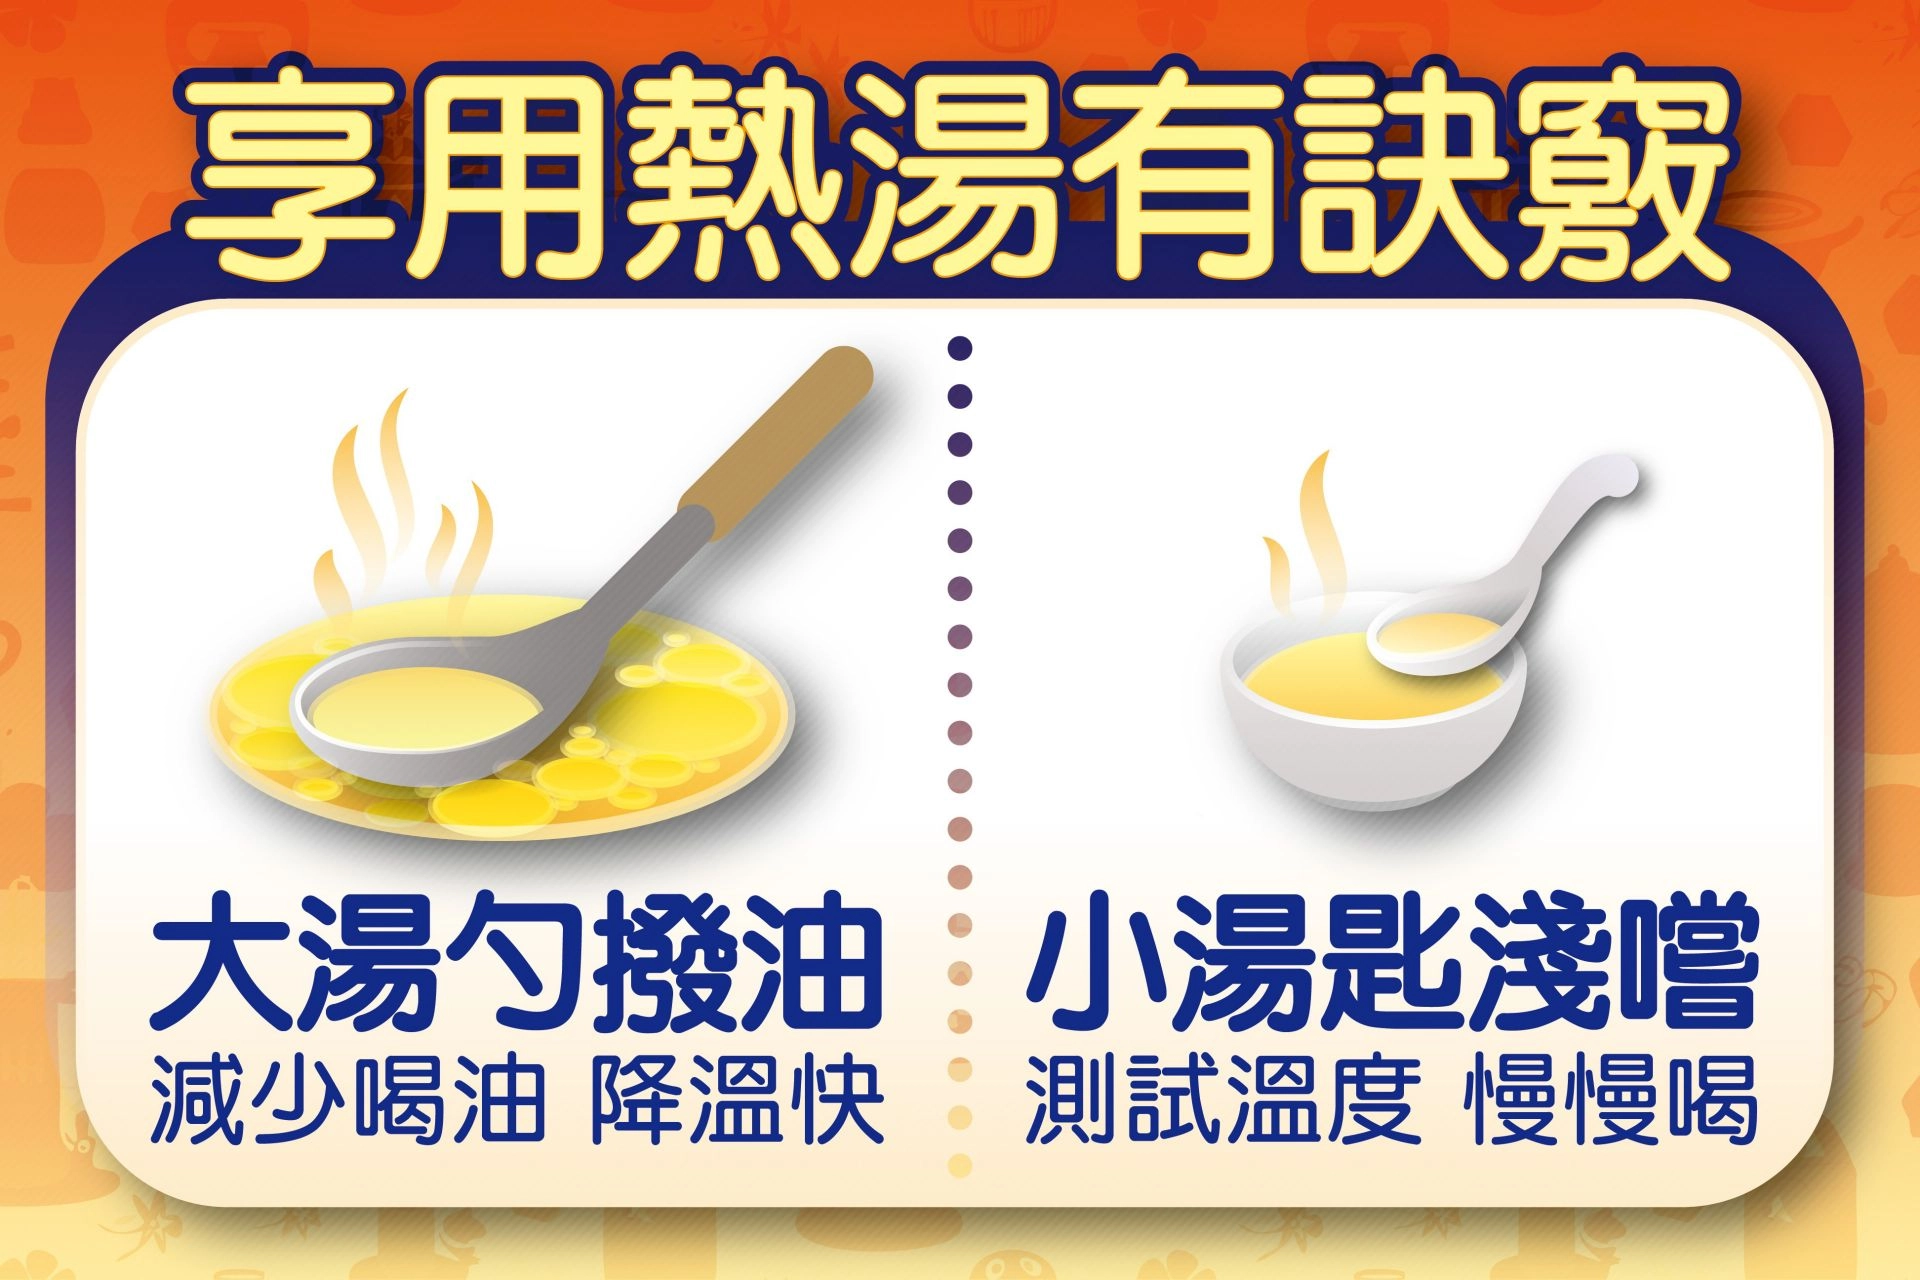 品嘗熱湯有訣竅，降溫後品嘗更能喝出湯汁的美味。